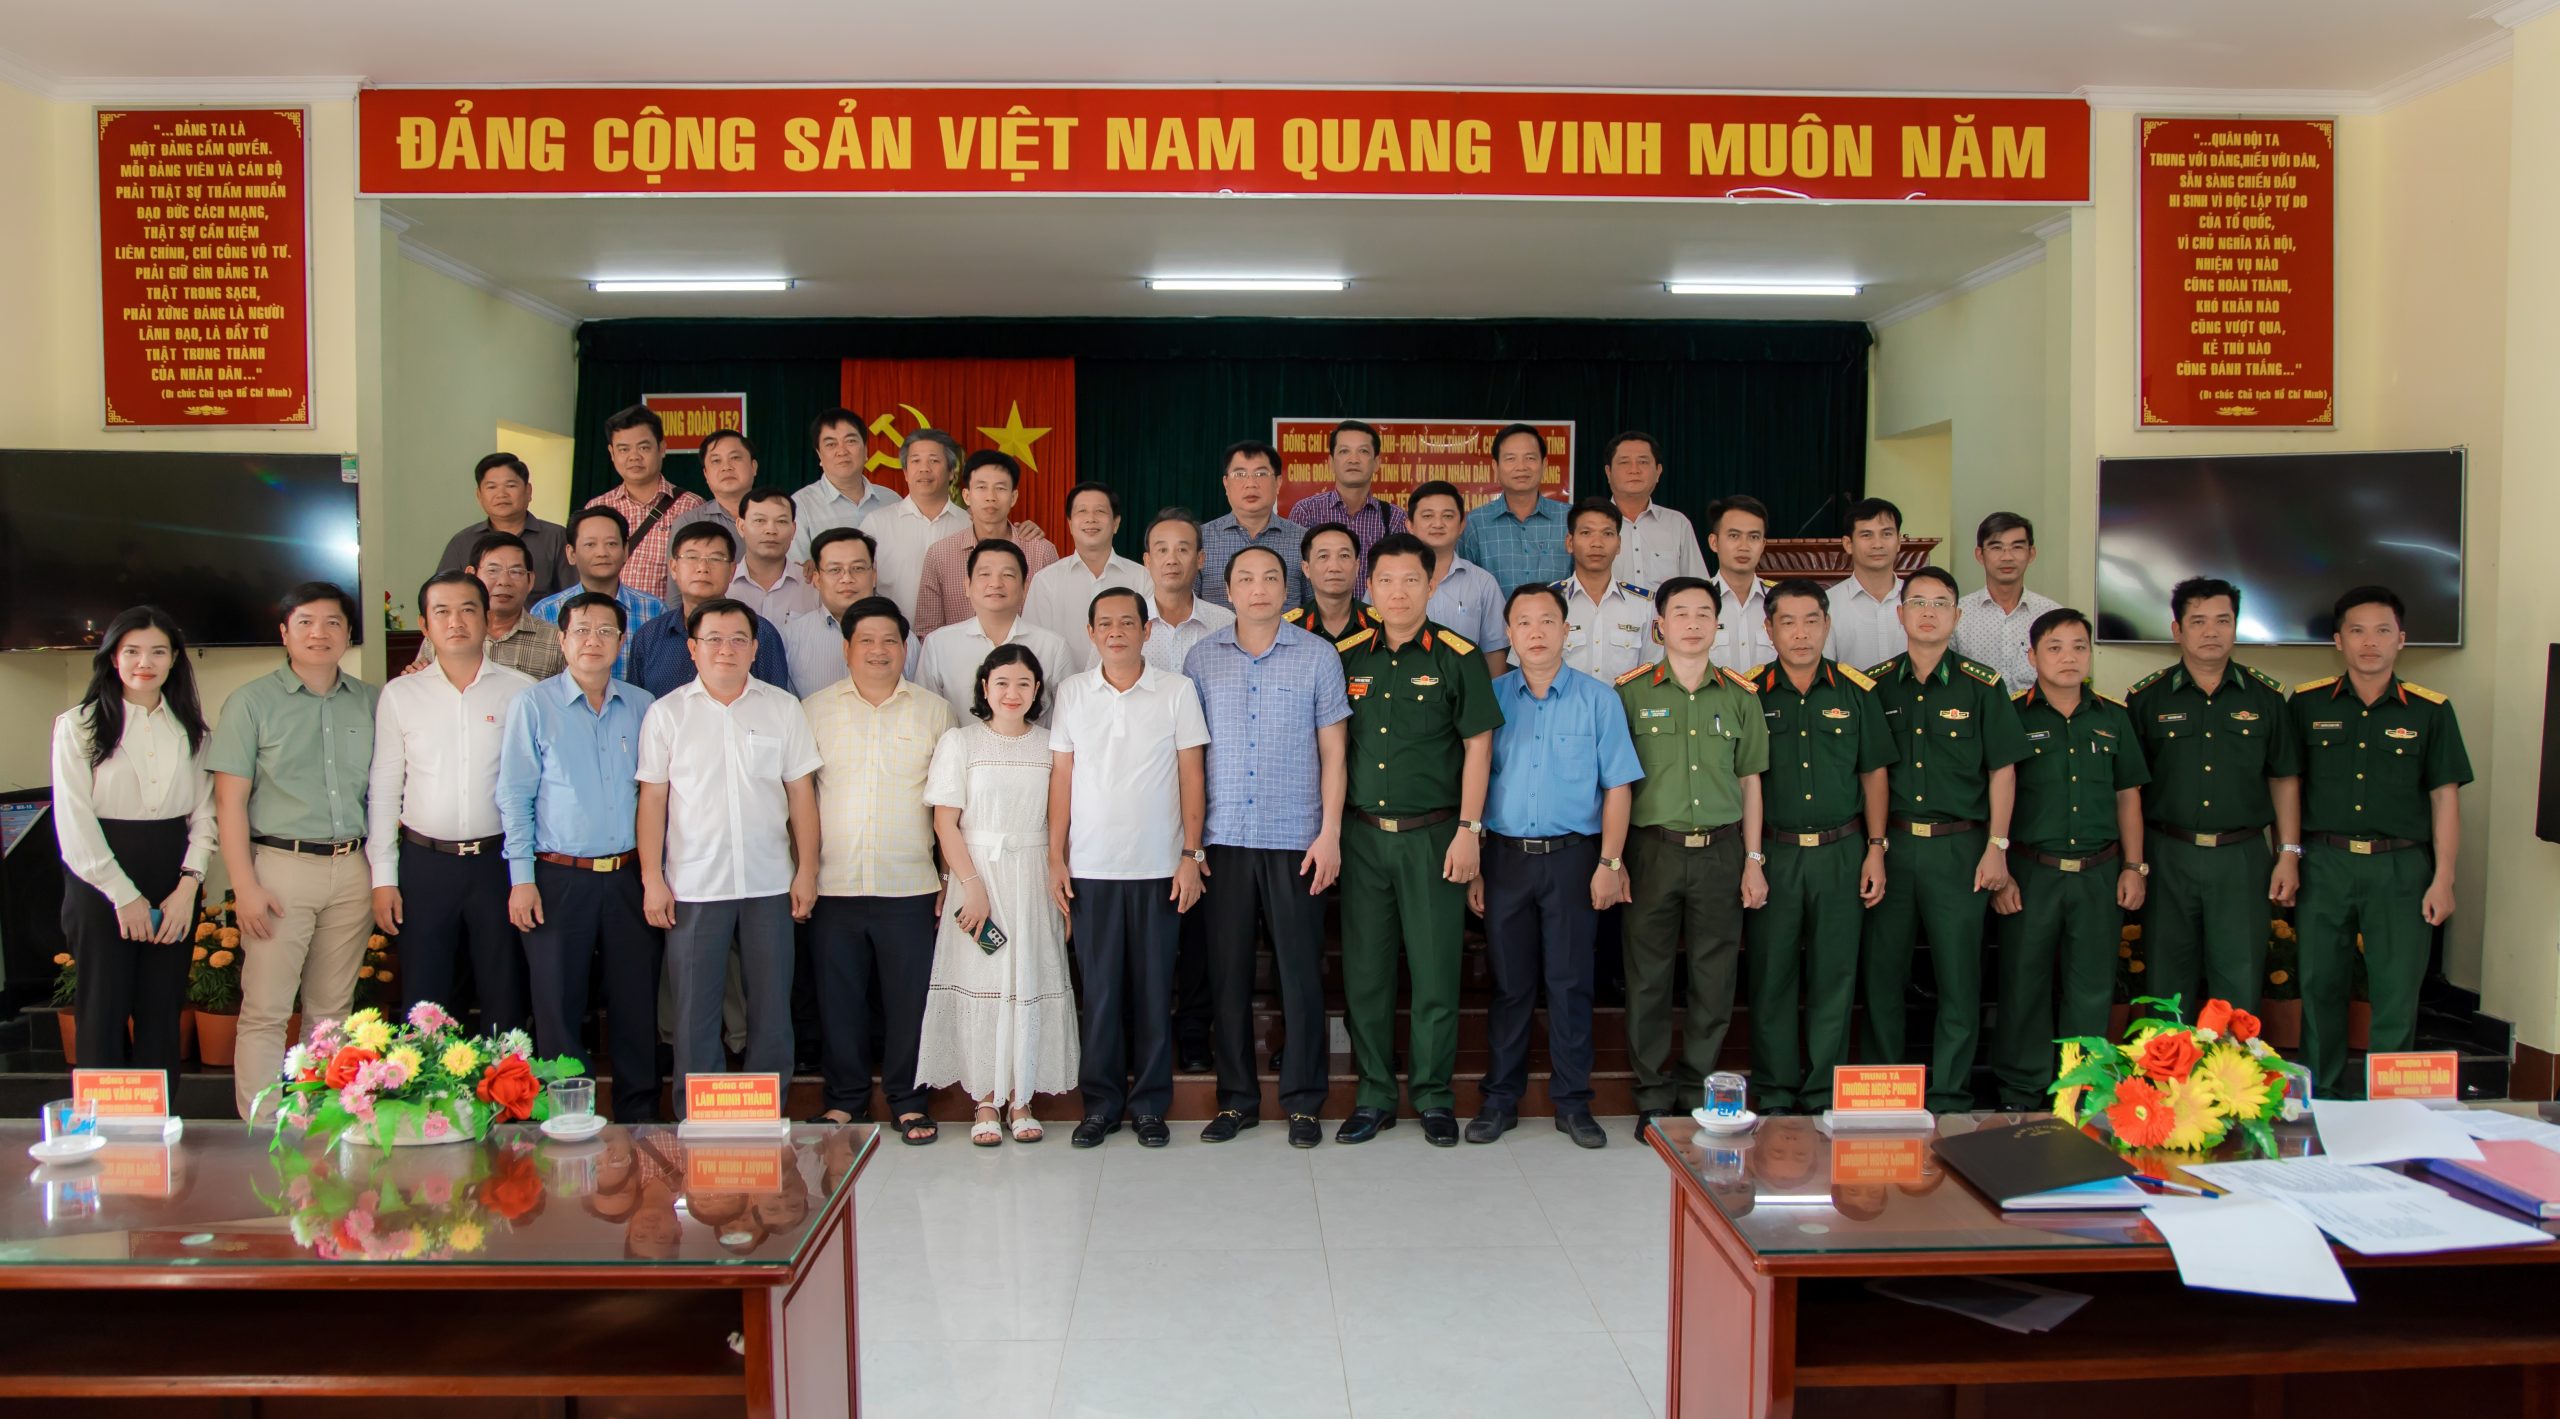 Phú Cường Kiên Giang tặng gần 130 triệu đồng quà Tết cho các đơn vị, gia đình chính sách trên địa bàn xã Thổ Châu & các xã huyện lân cận